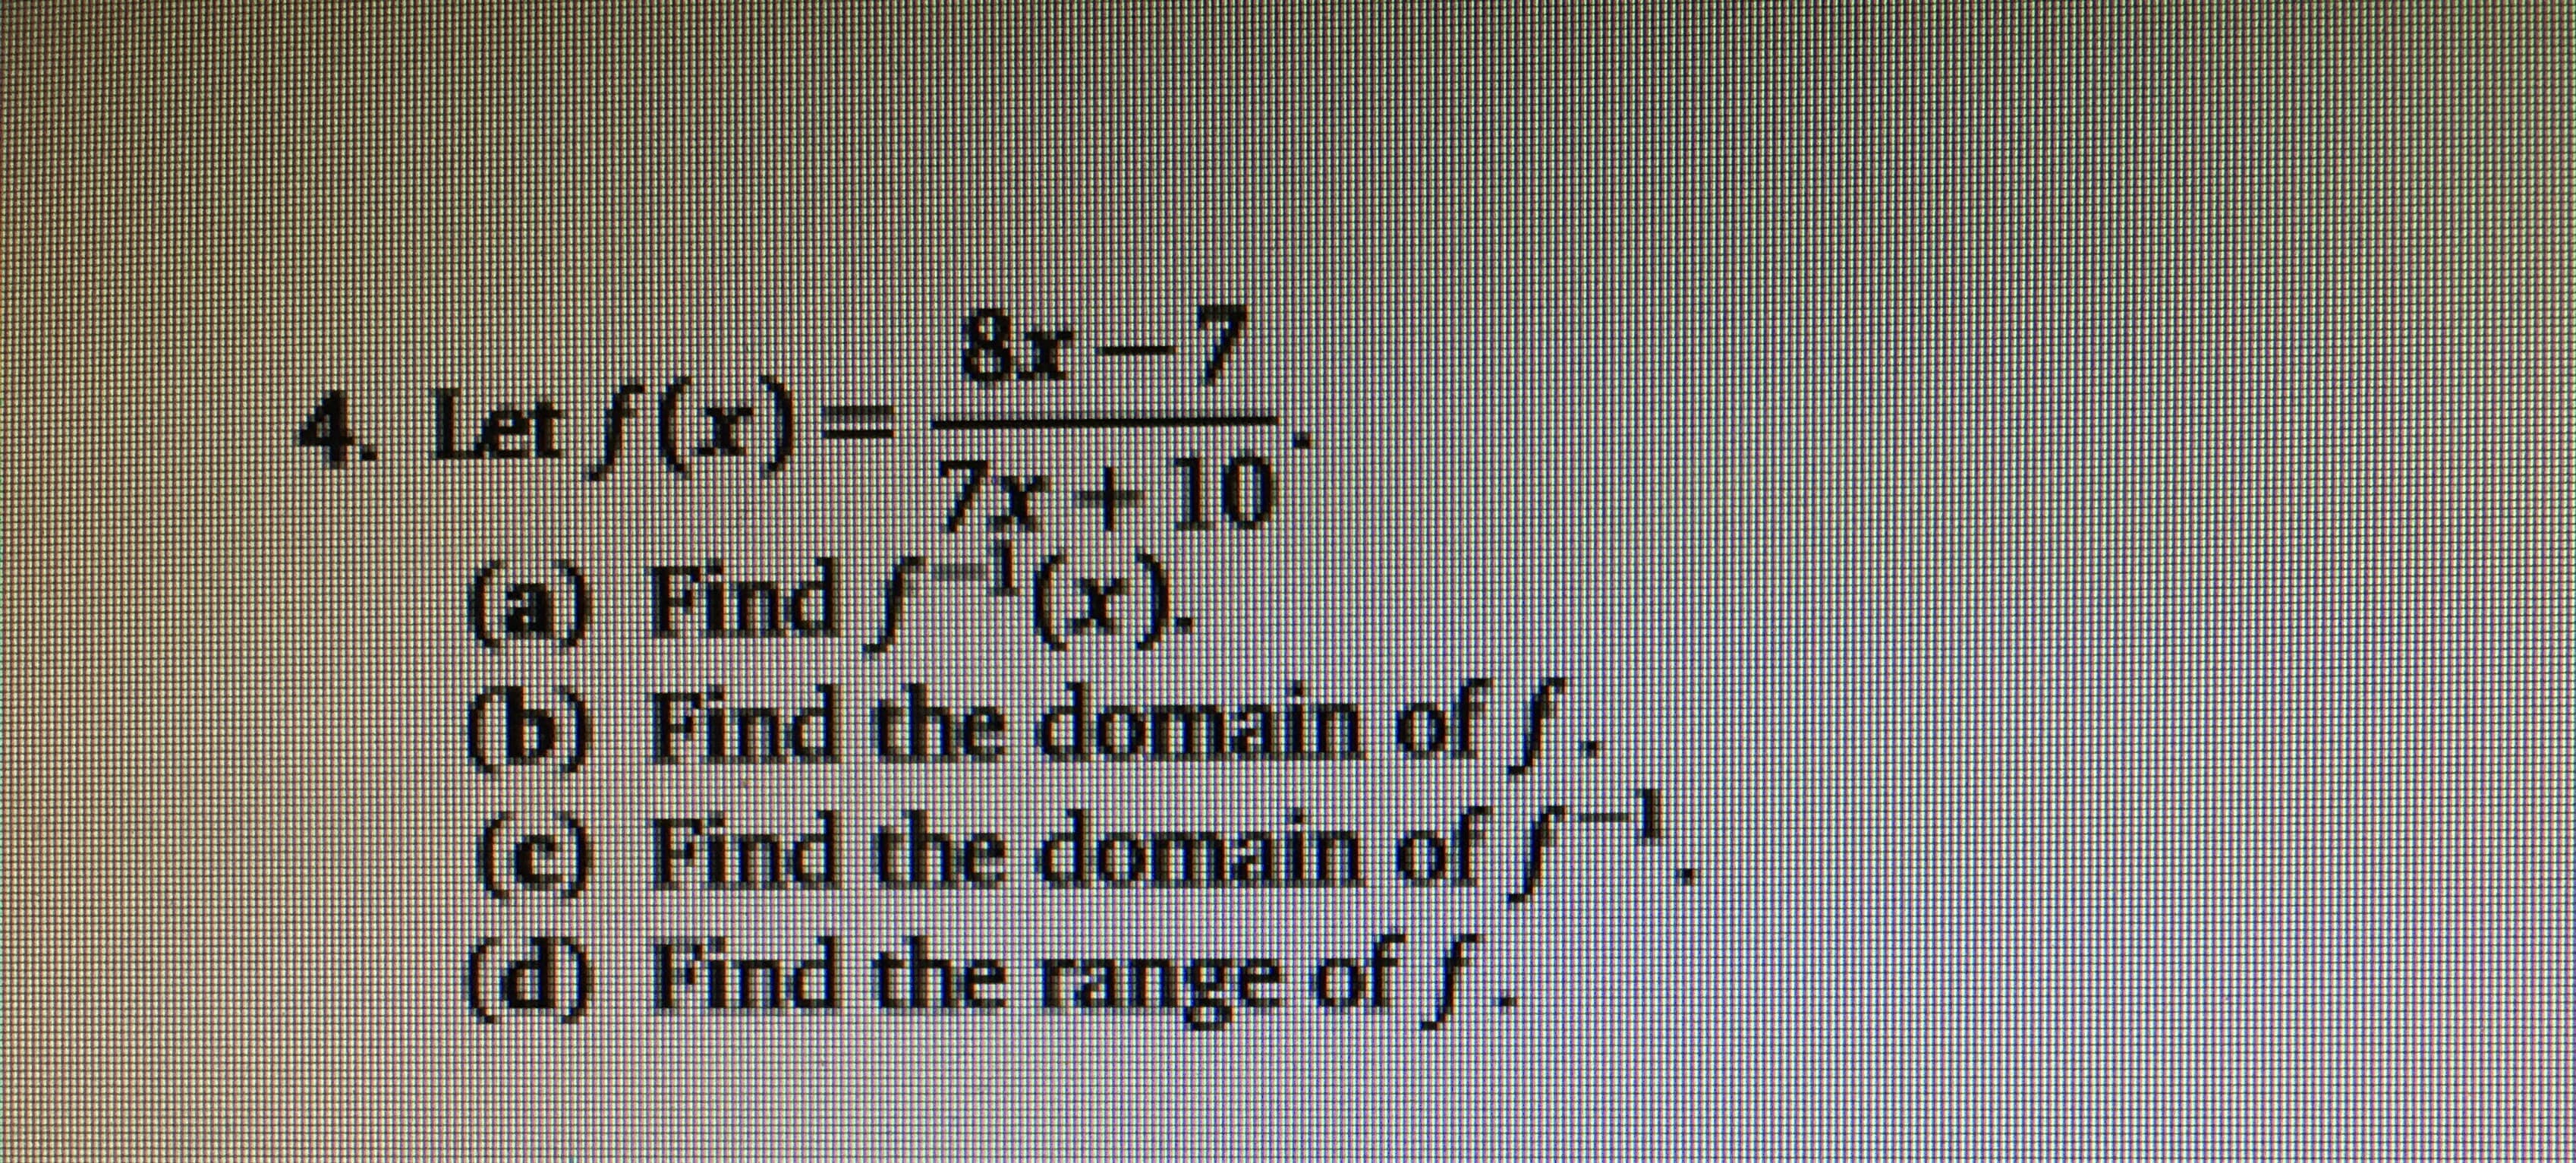 8x-7
4. Let f)7x + 10
(a) Find f (x).
(b) Find thedomain of/.
(c) Find the domain of f
(d) Find the range of
